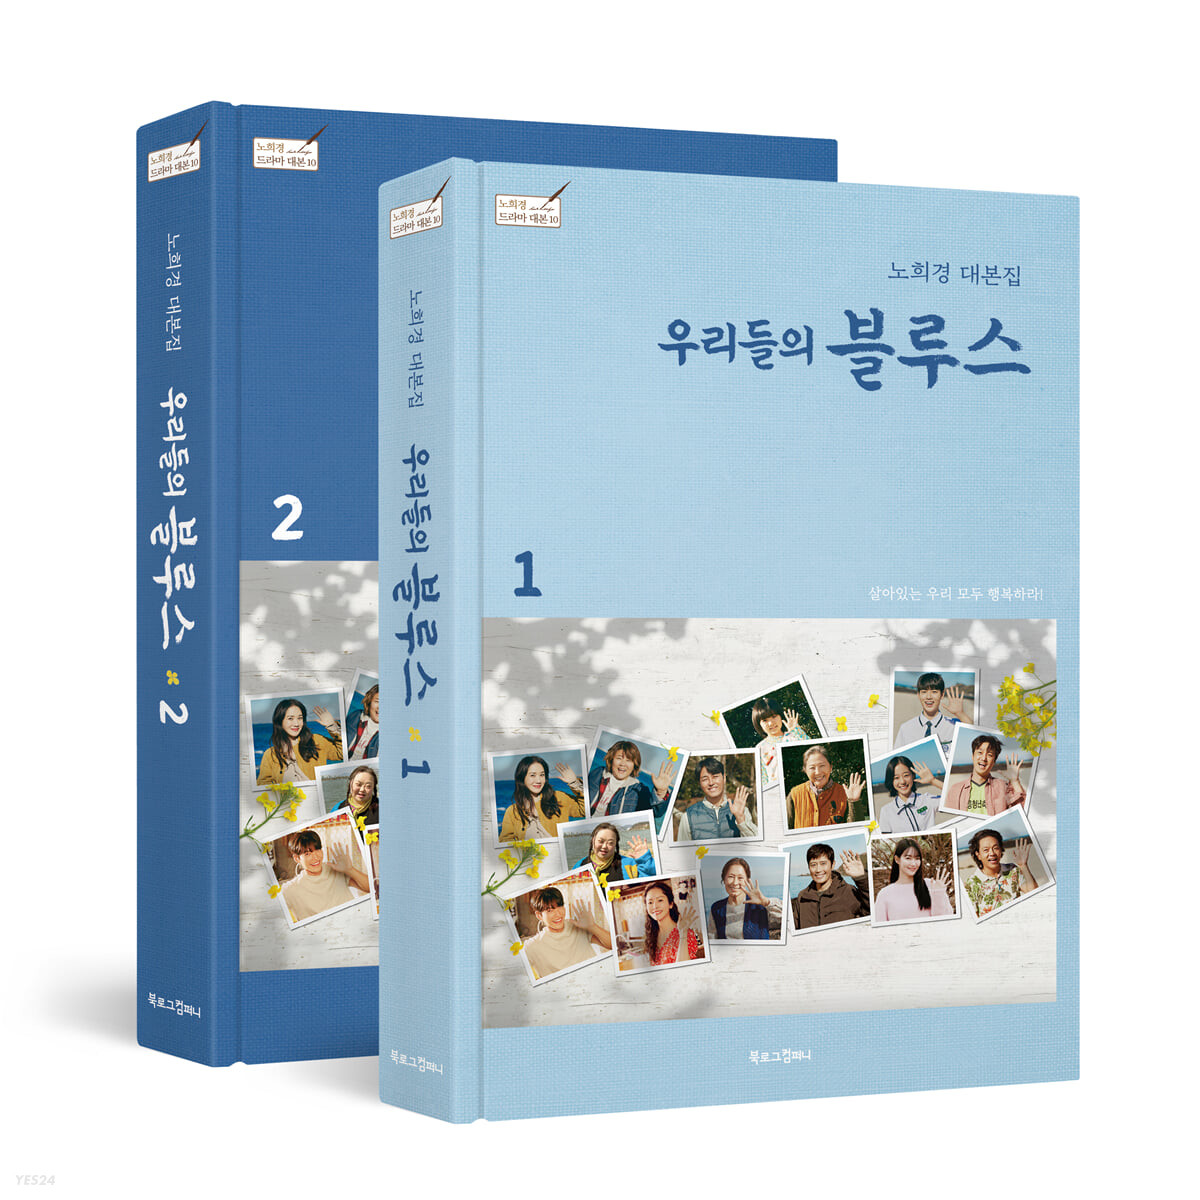 فیلم نامه سریال کره ای غم های ما Our Blues 2022 از فروشگاه کتاب سارانگ